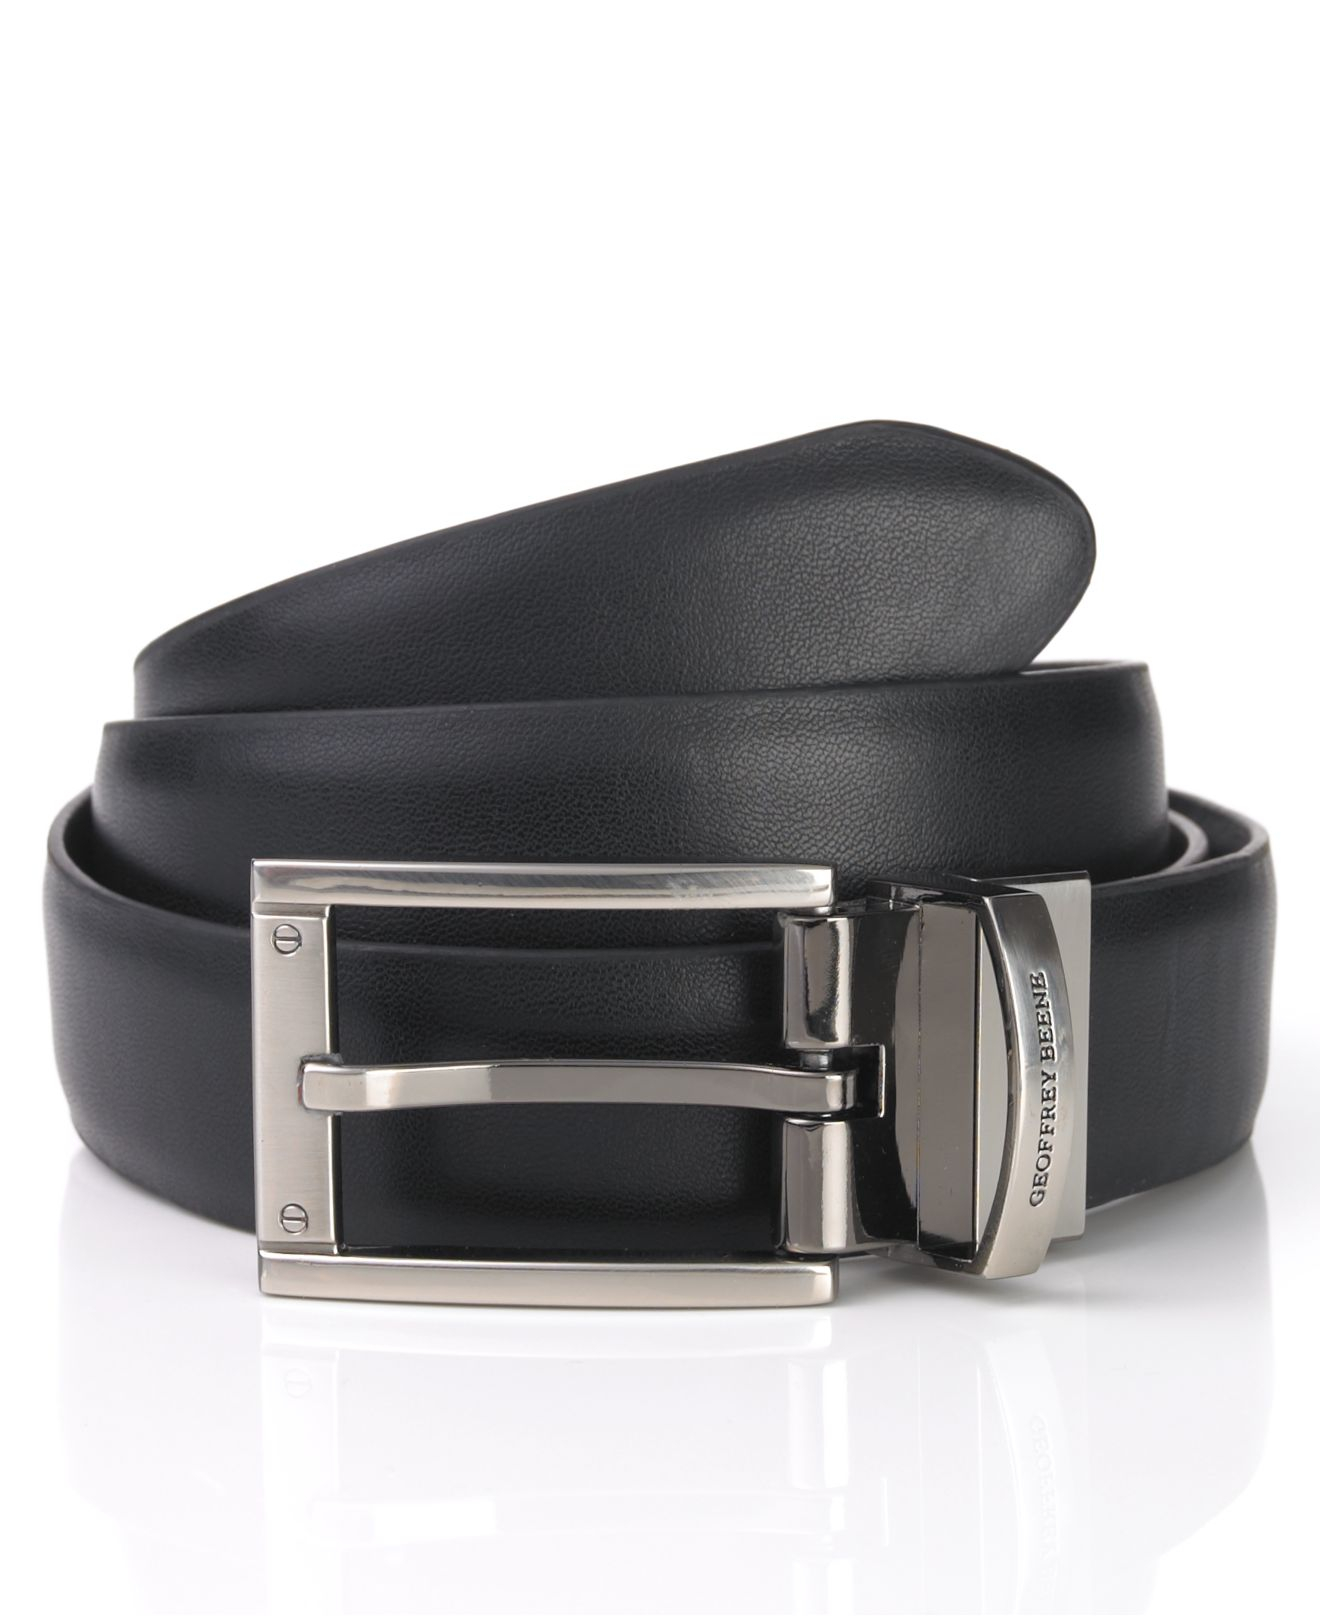 Lyst - Geoffrey Beene Reversible Leather Dress Belt in Black for Men